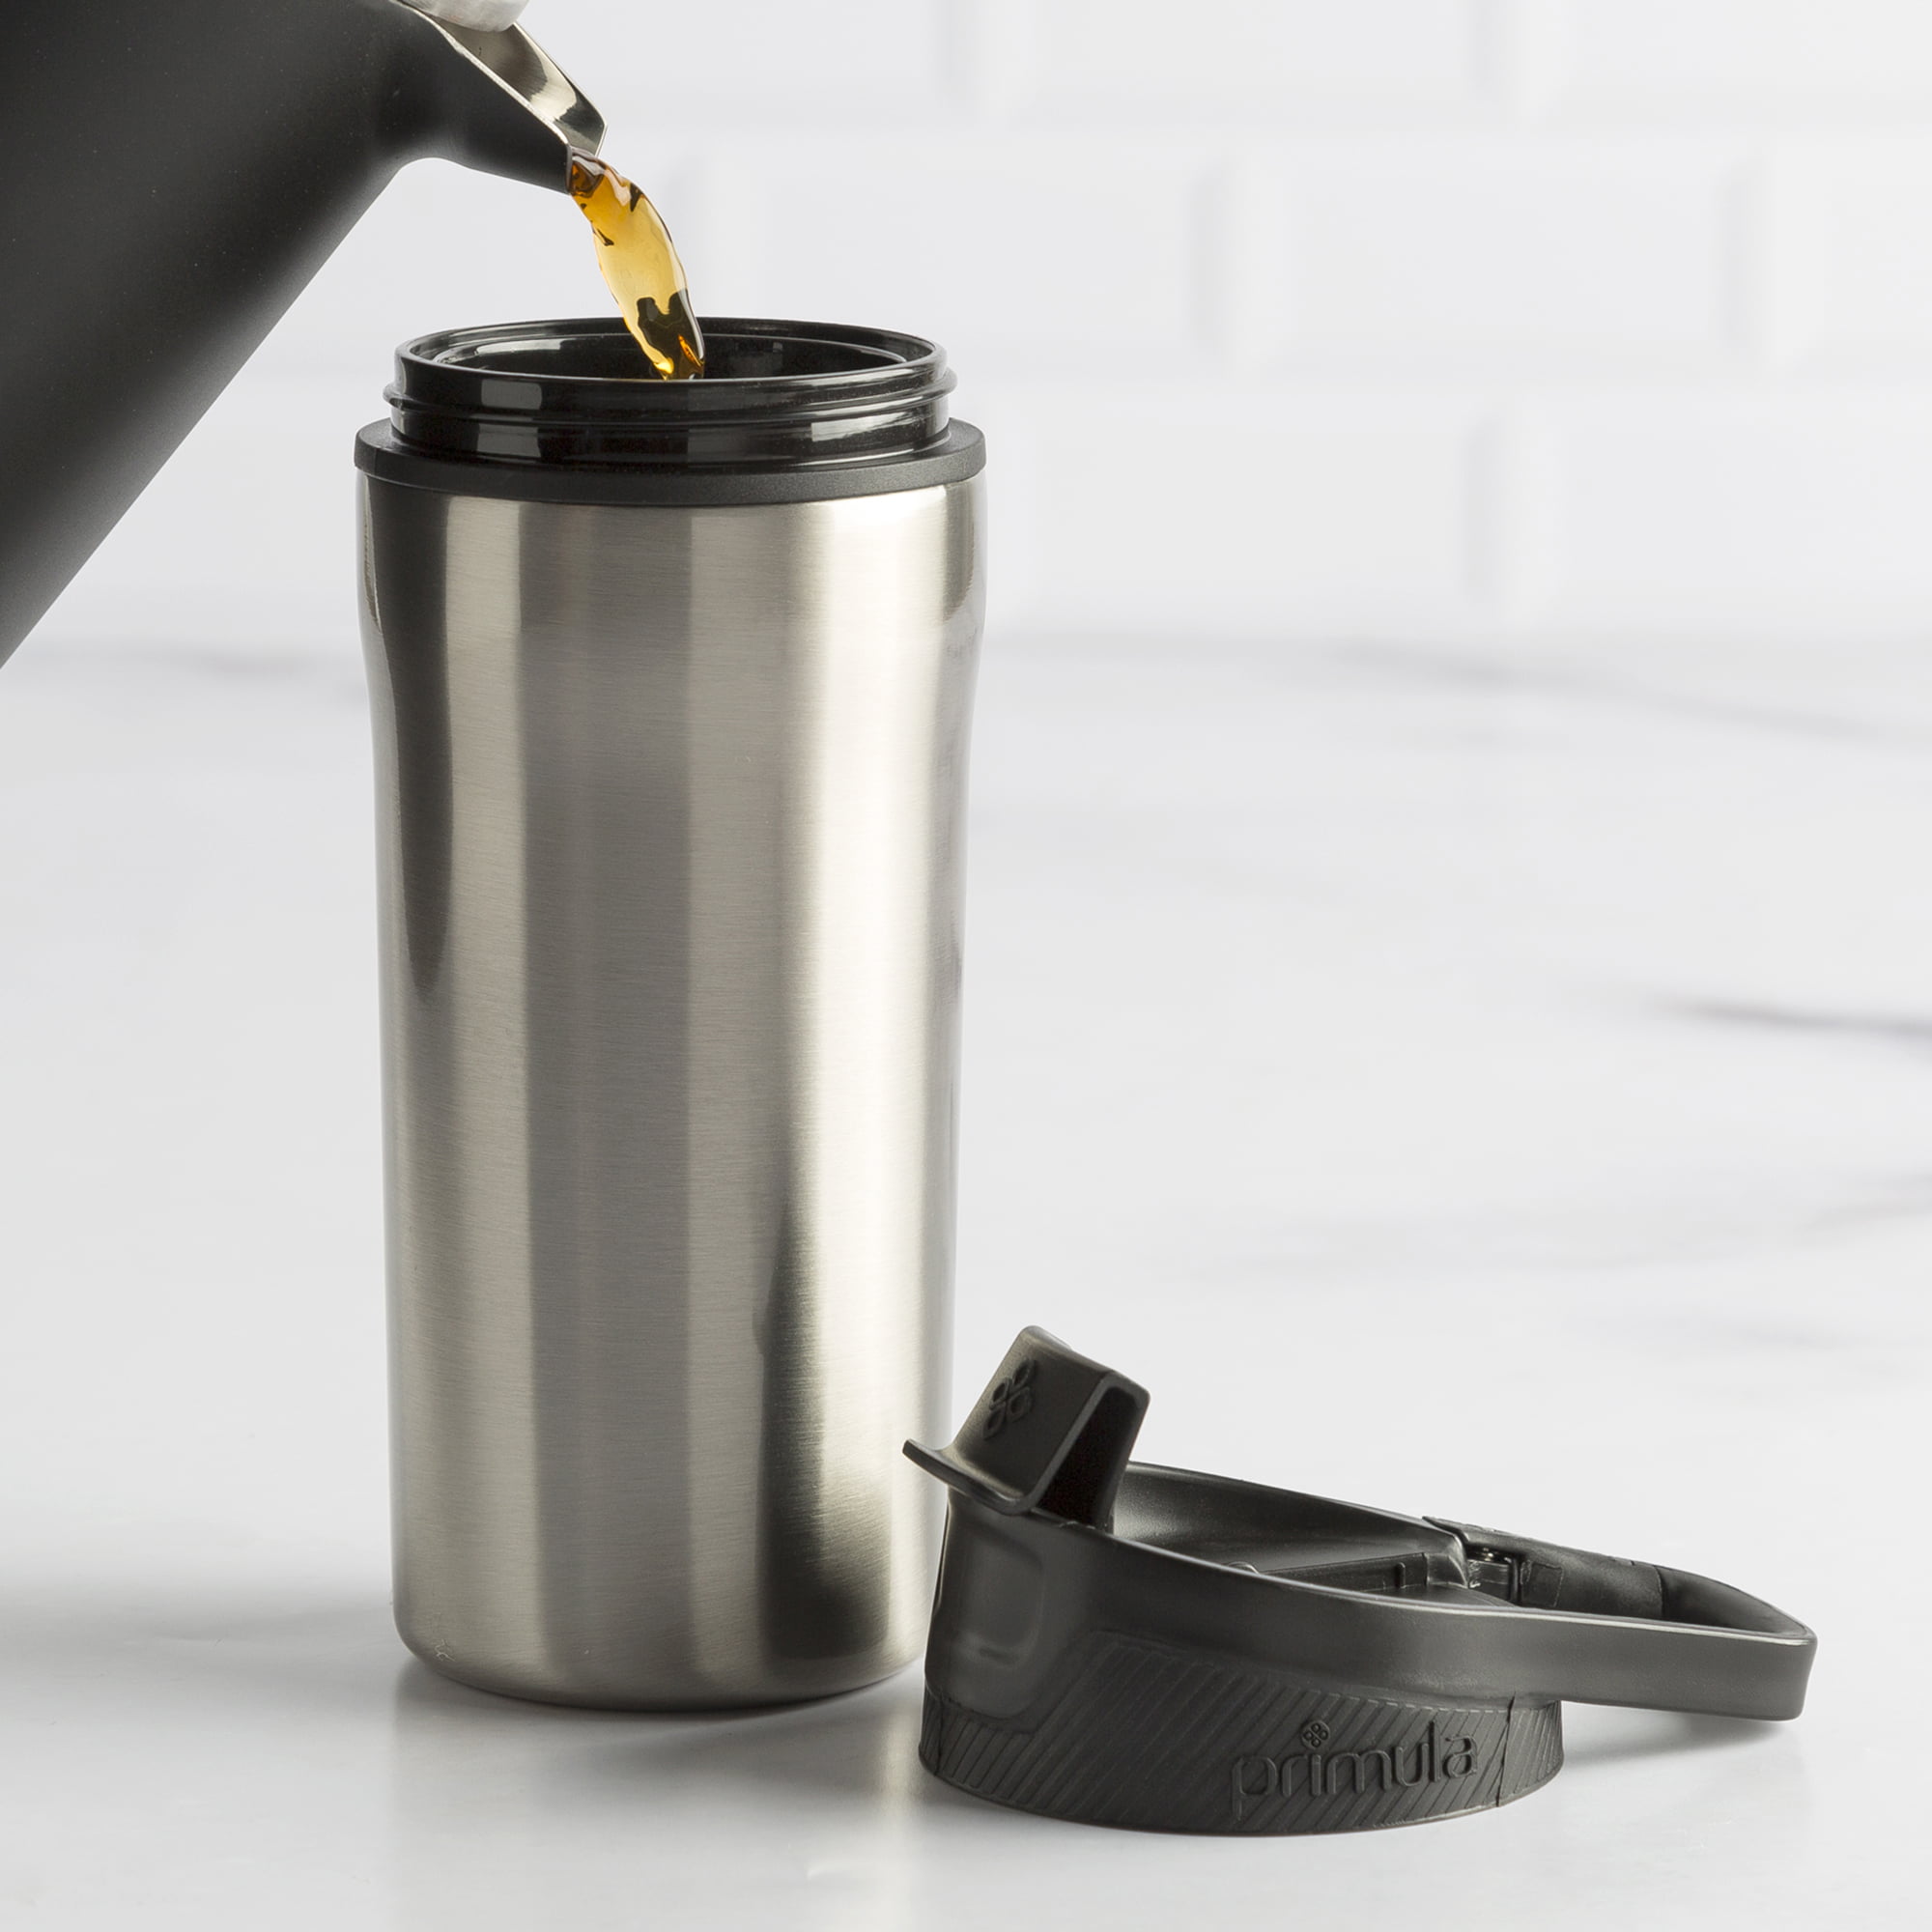 Primula Coffee Mug, Insulated, Charcoal, 14 Ounce - 1 ea